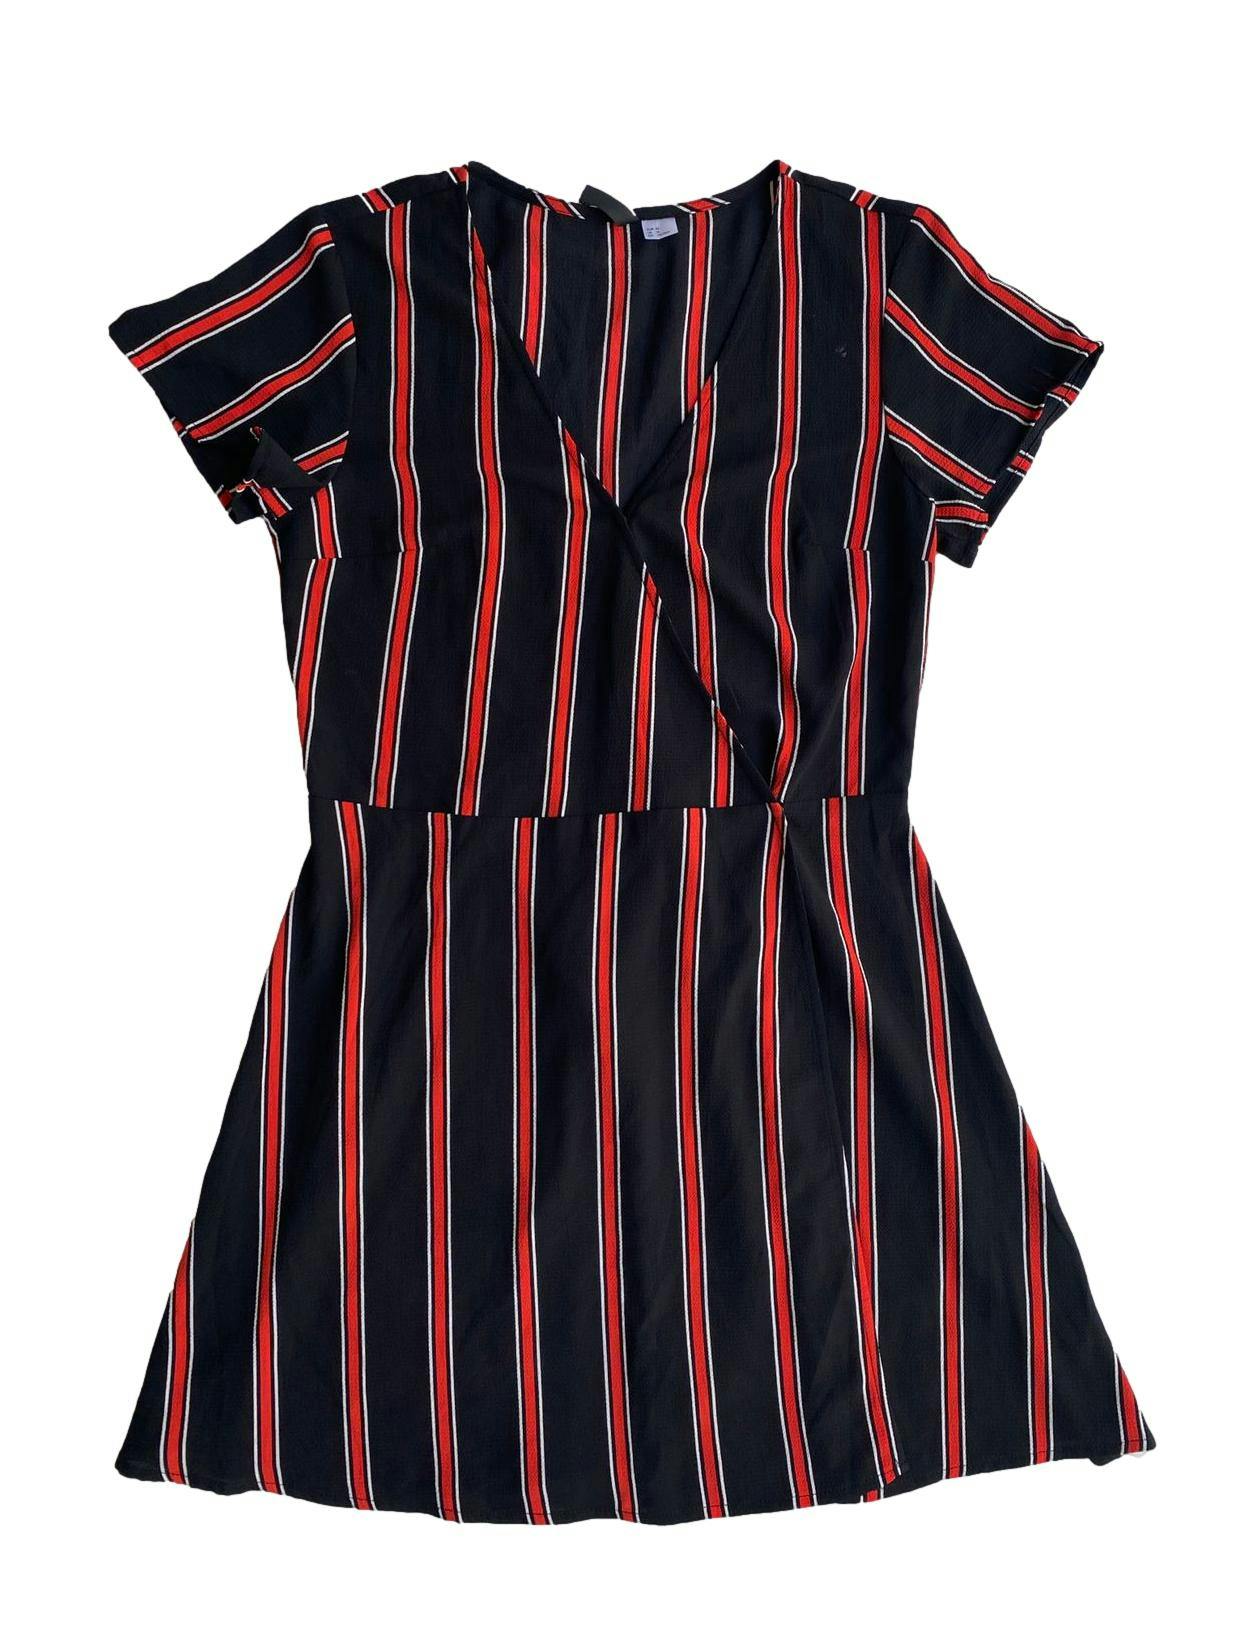 Vestido h&m Divided negro con rayas verticales rojas. Se cierra la prenda con un botón que entrecruza el vestido, también con una correíta de la misma tela. Busto: 90cm, Cintura: 76cm, Largo: 91cm (con etiqueta)